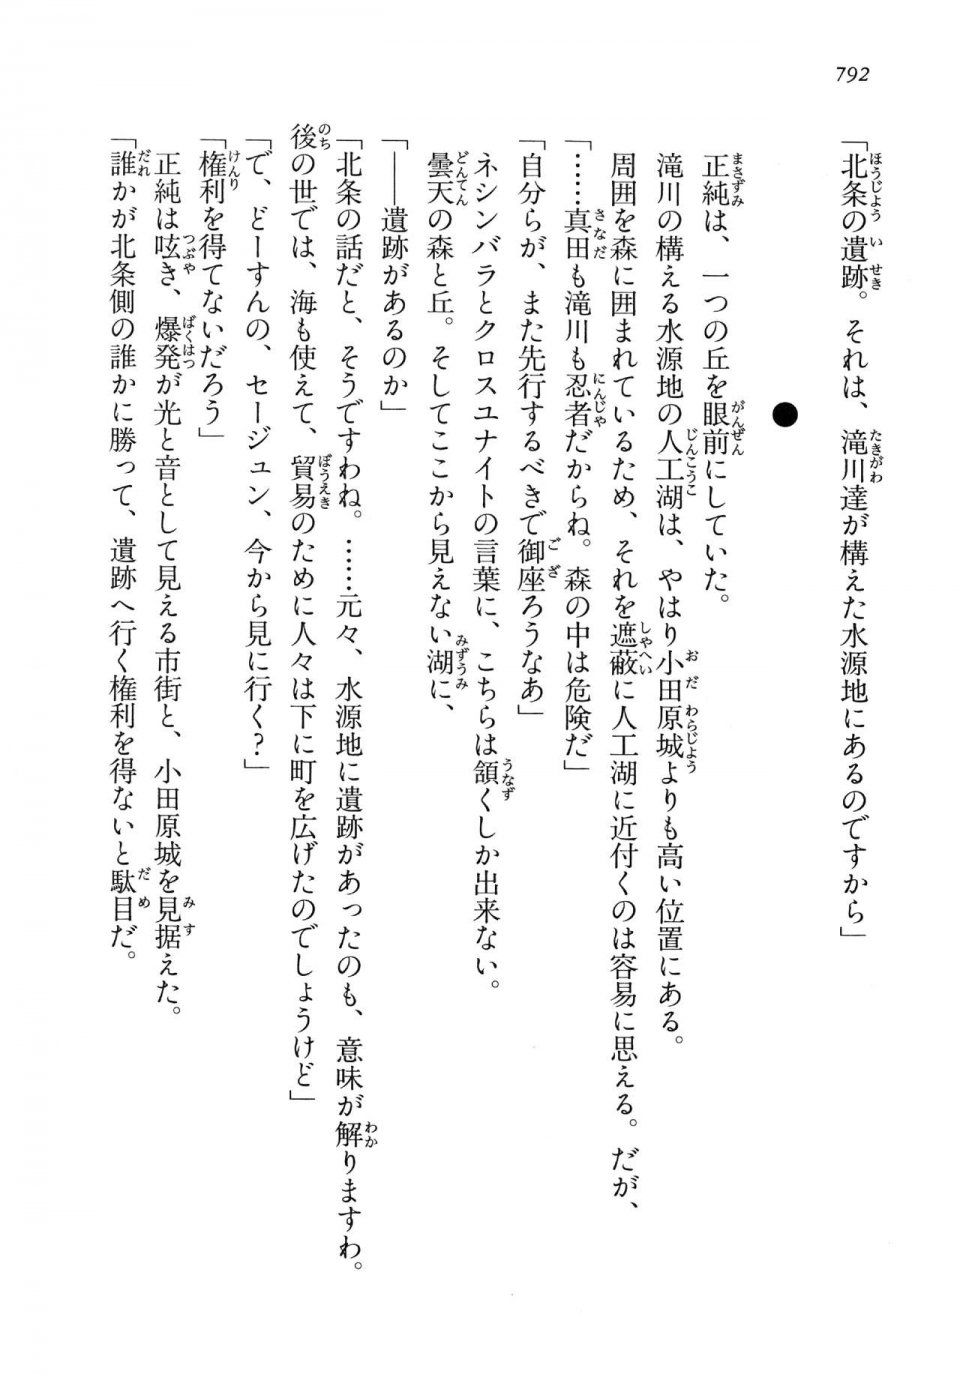 Kyoukai Senjou no Horizon LN Vol 14(6B) - Photo #792